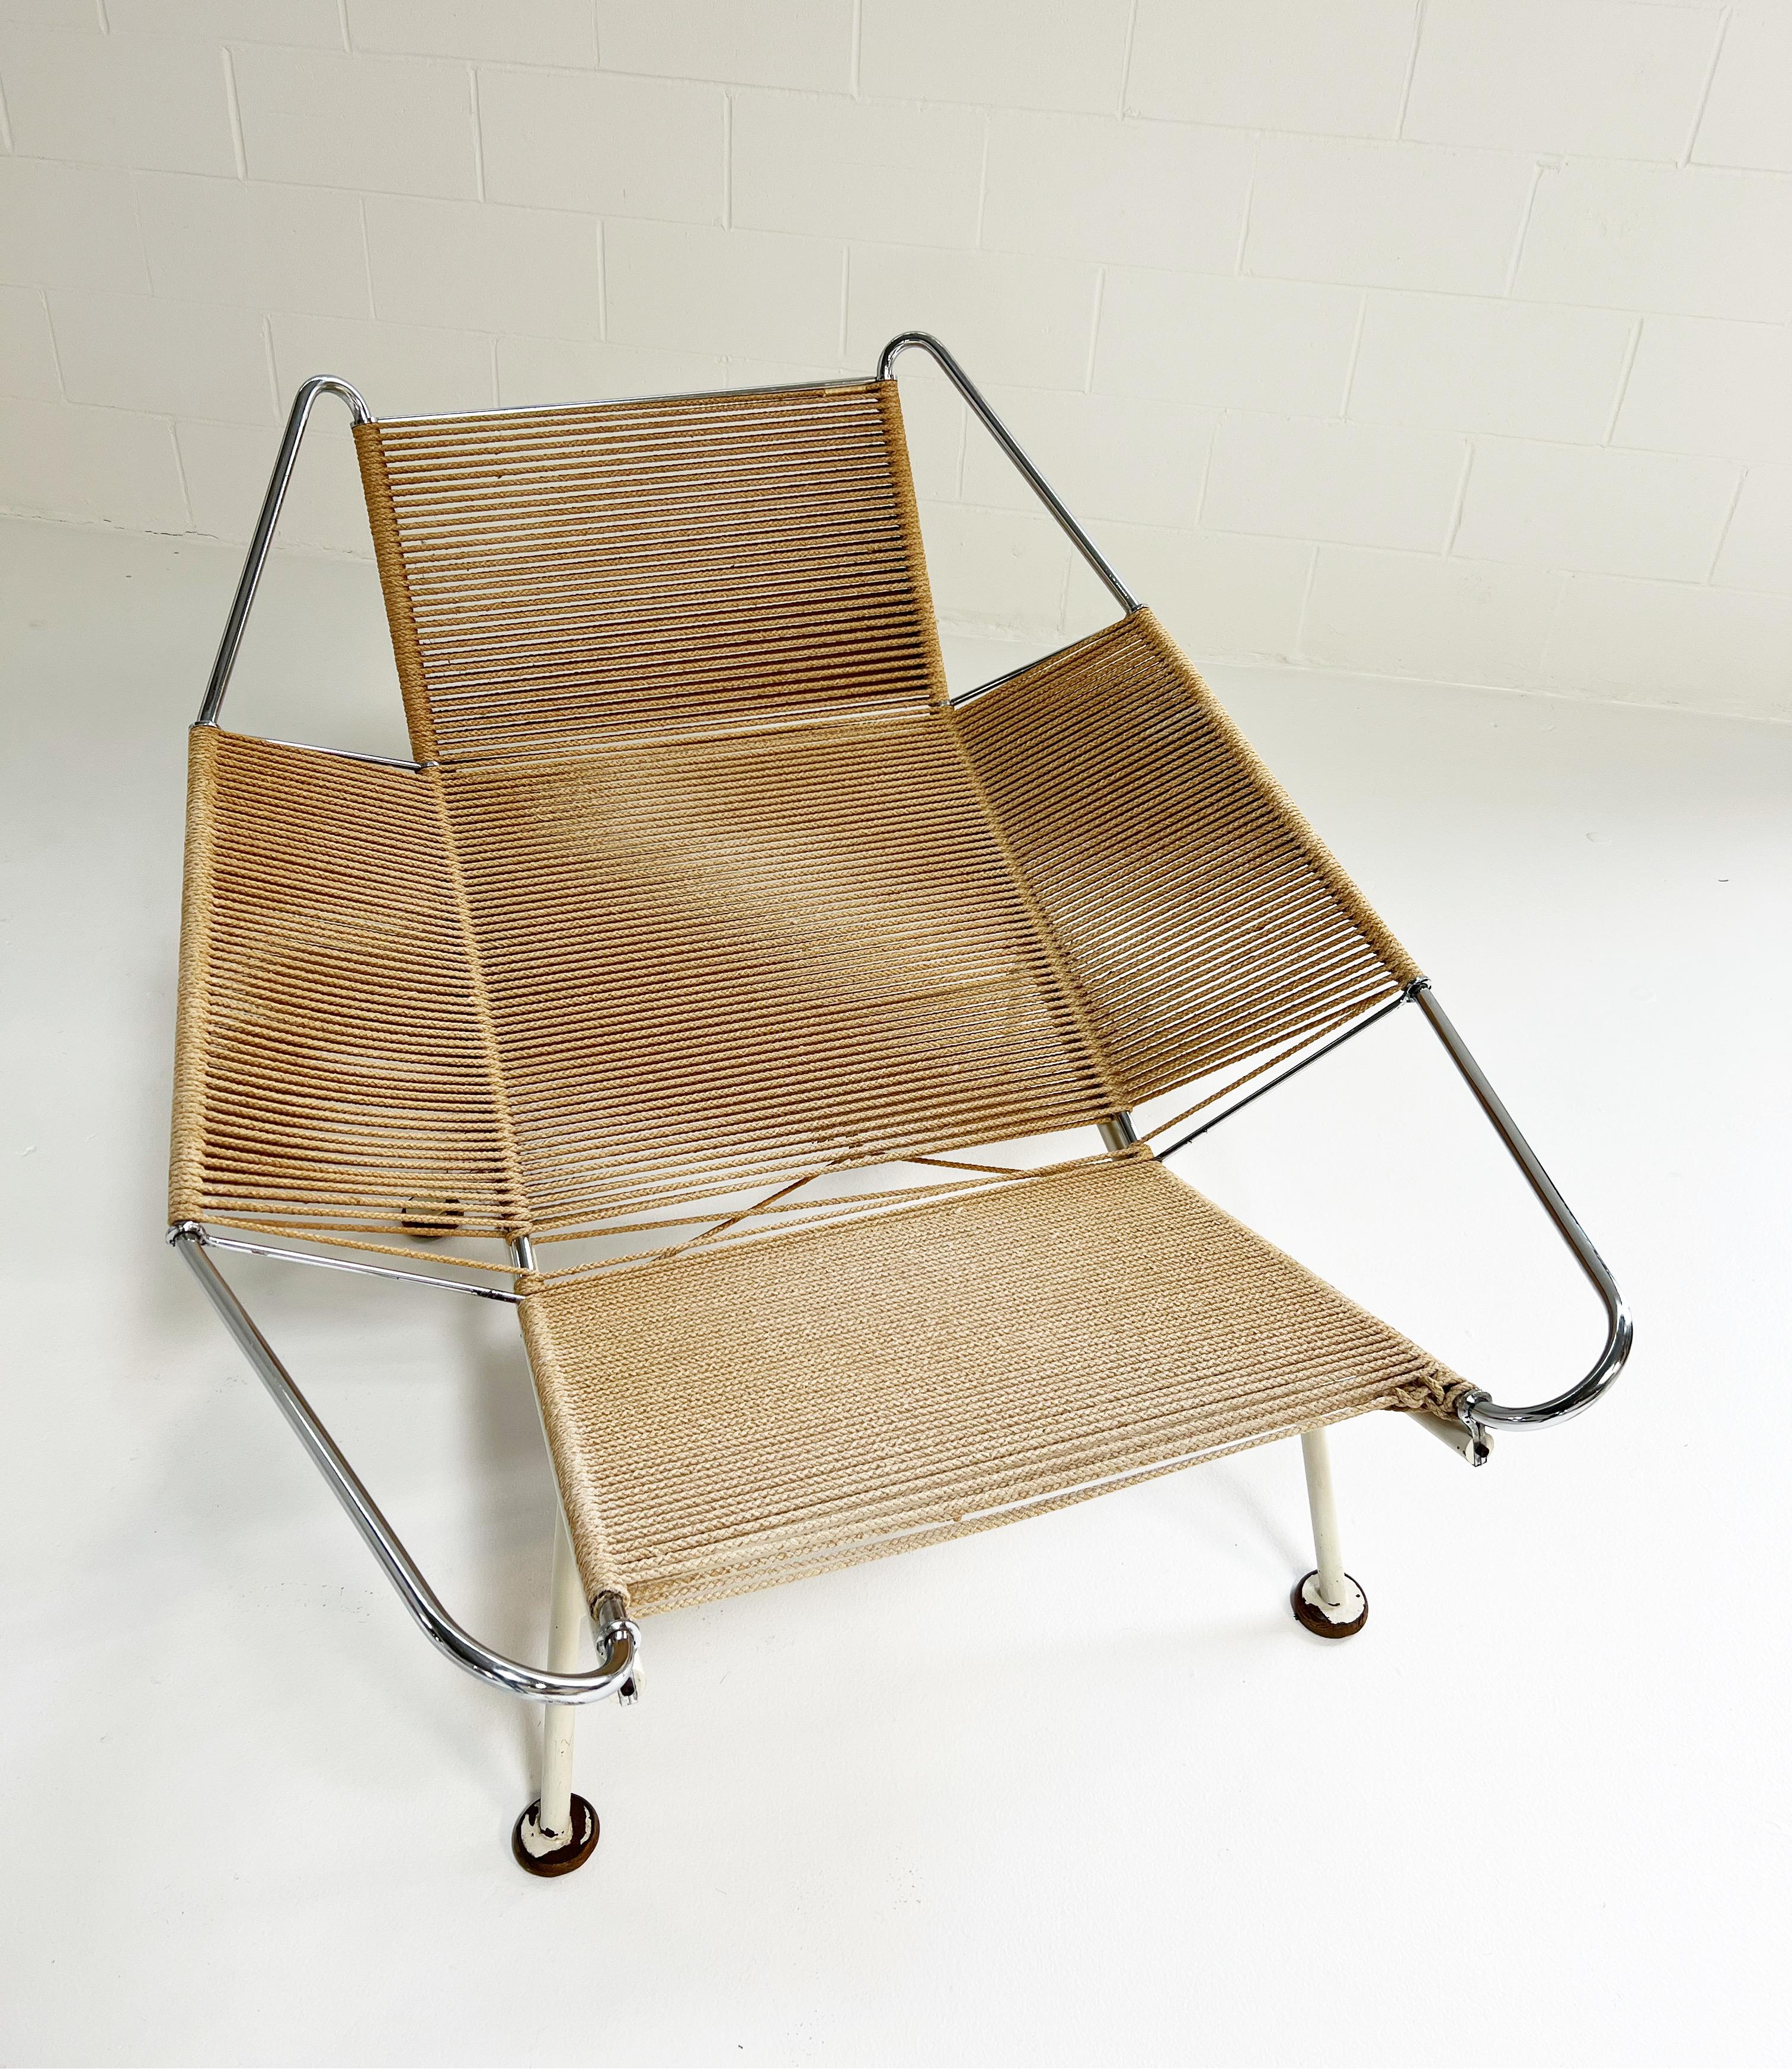 Ein Flag Halyard Stuhl von 1950 in sehr gutem Zustand. Hans Wegner entwarf dieses ikonische Design beim Faulenzen am Strand. Für einen noch bequemeren Sitz haben wir eines unserer kuscheligen, hochflorigen kalifornischen Schaffelle